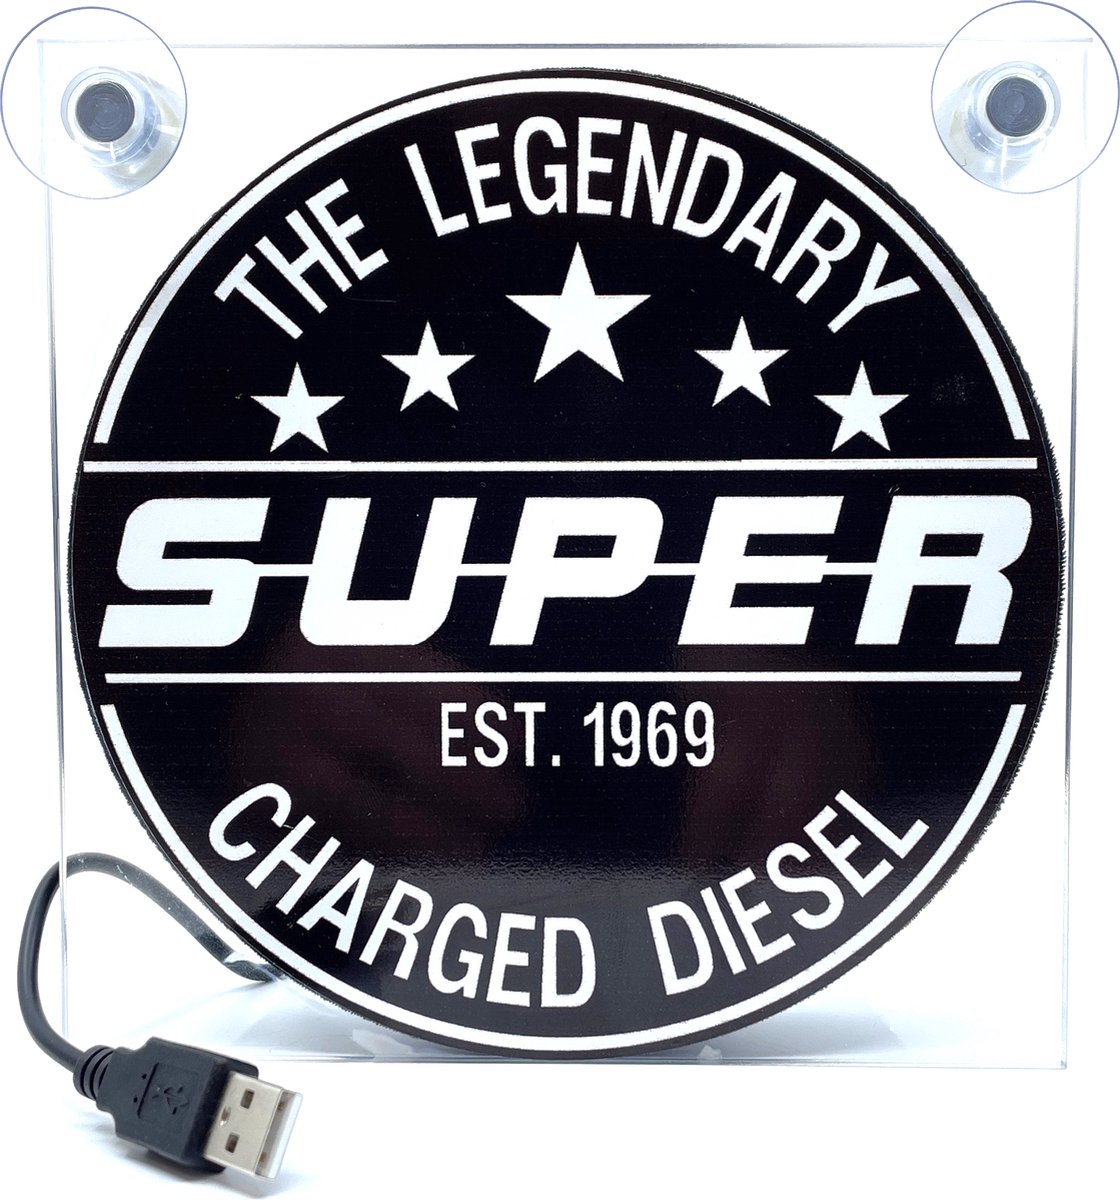 Lichtbakje SUPER The Legendary Charged Diesel voor auto, vrachtwagen, cabine, enz